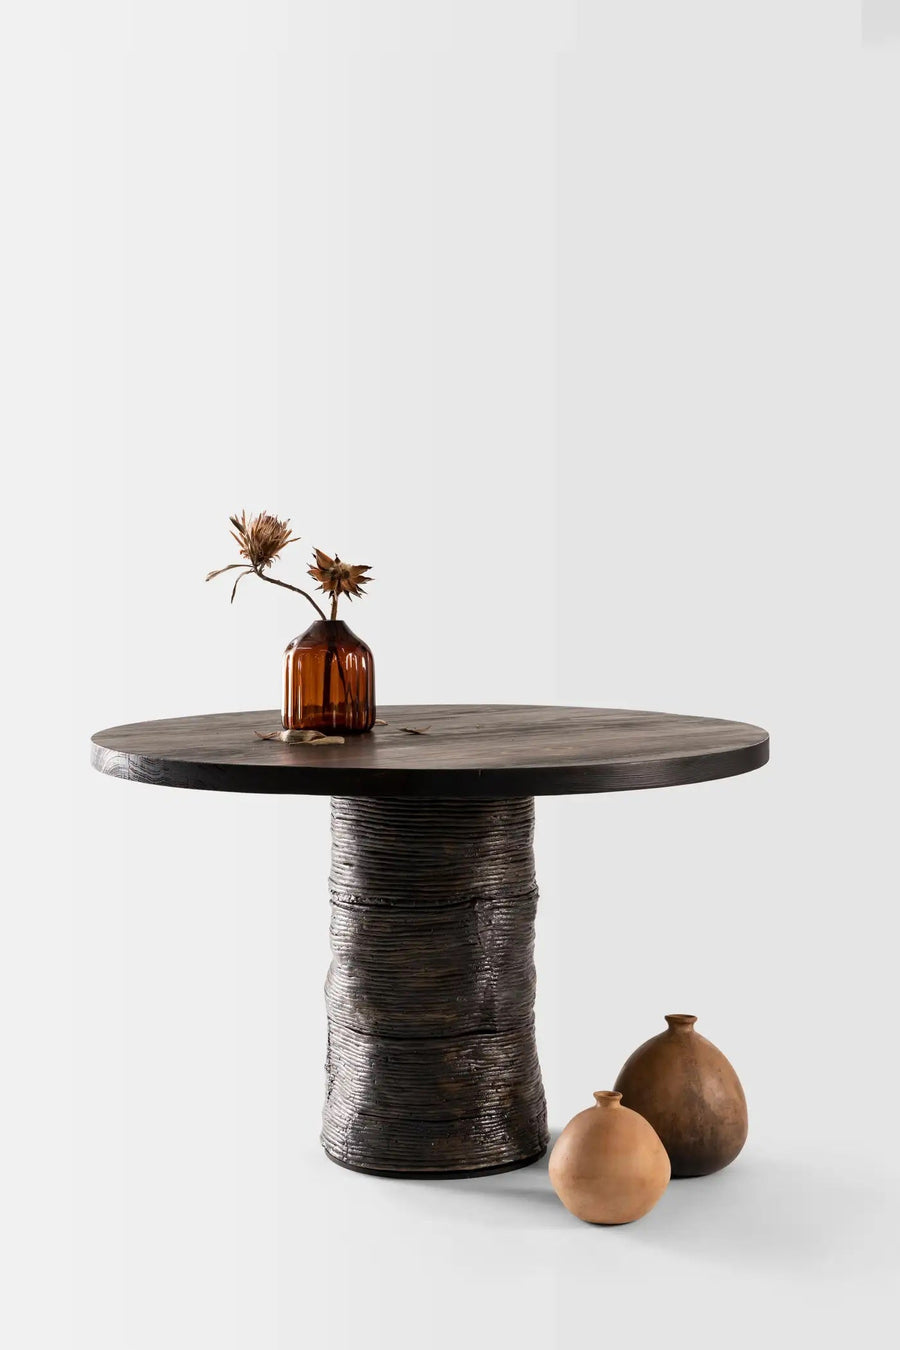 Lazo Table by Peca studio